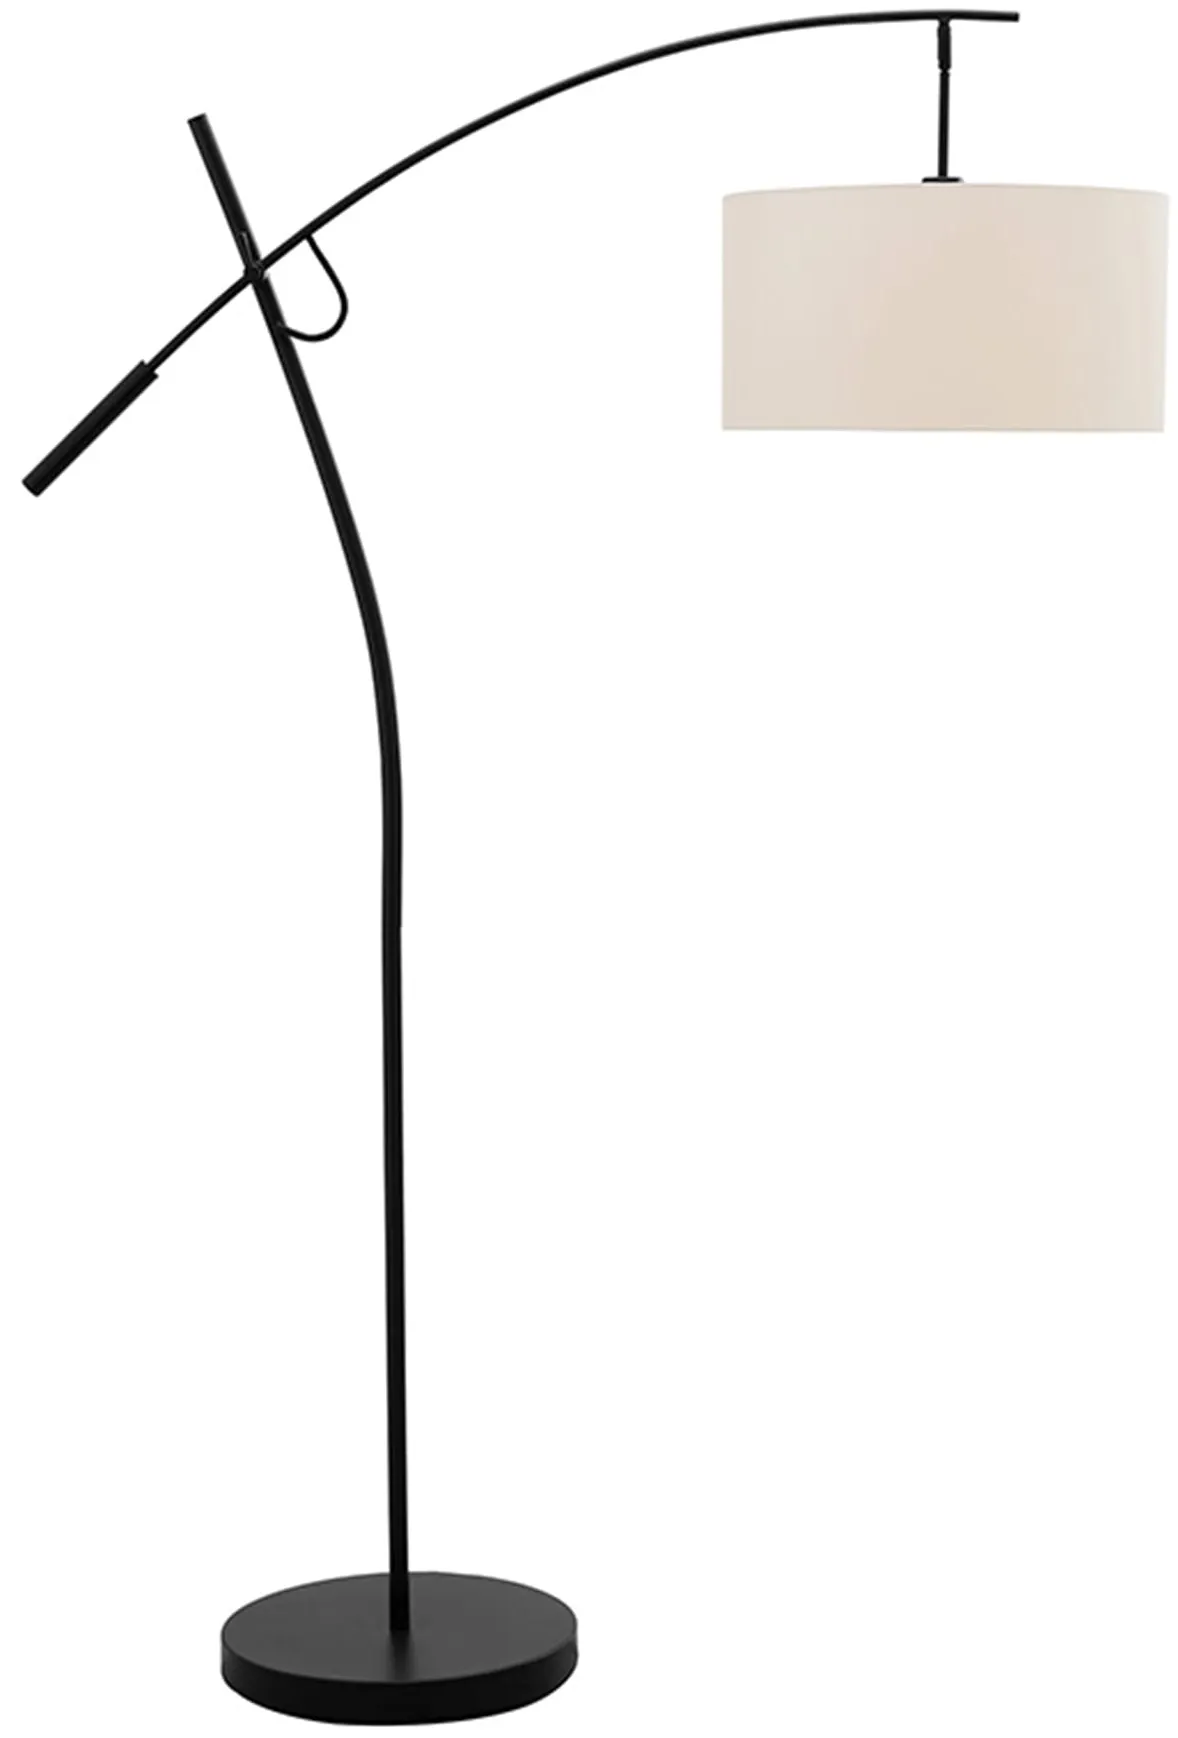 Bronze with Linen Drum Shade Adjustable Floor Lamp 69"H